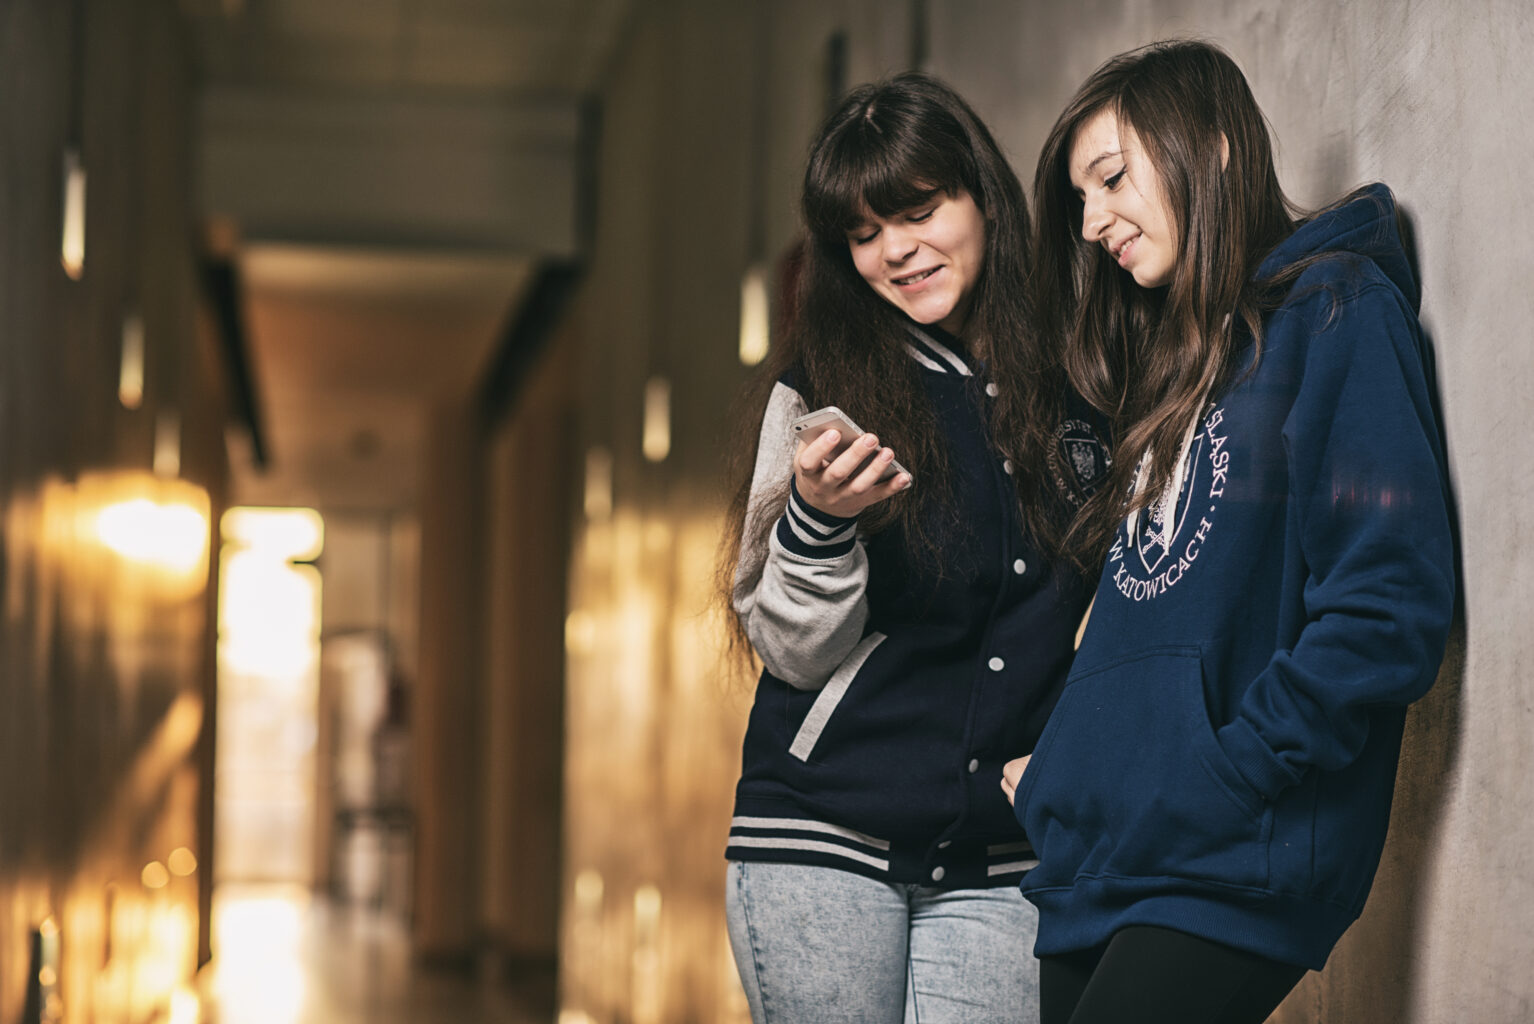 Dwie studentki UŚ, oglądają coś na telefonie/Two students of the University of Silesia watching someting on a smartphone